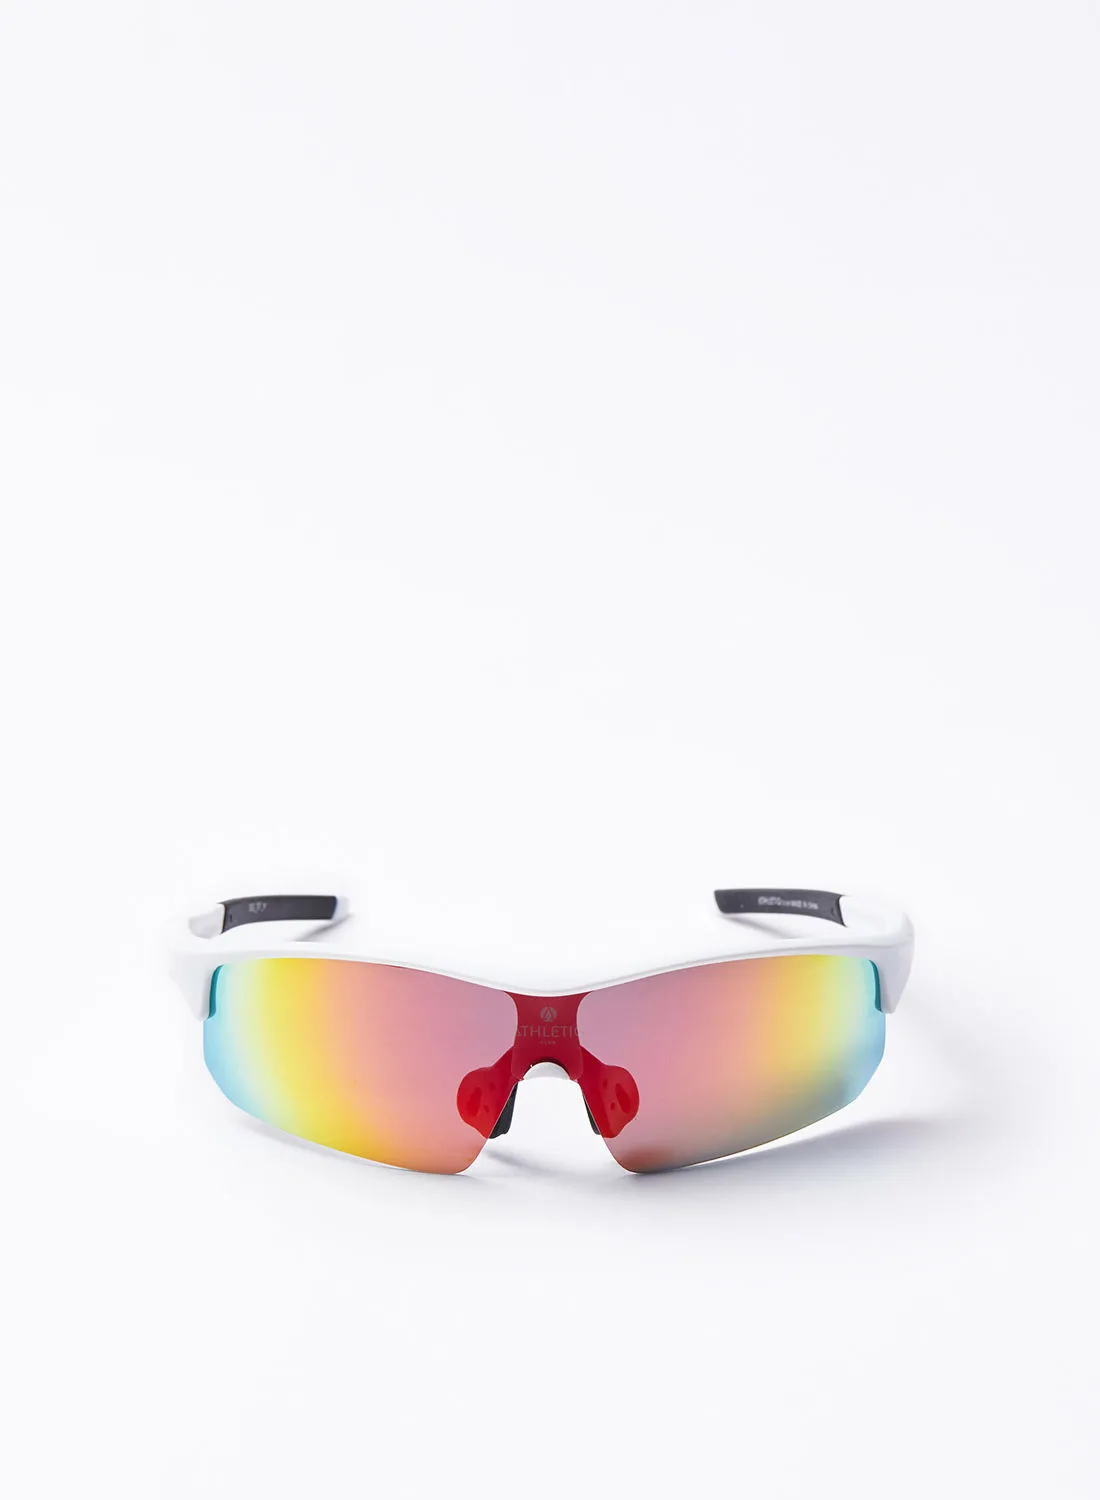 نظارة شمسية Athletiq للدراجات البخارية - Athletiq Club Oryx - إطار أبيض مع عدسة مرآة متعددة الطبقات باللون الأحمر